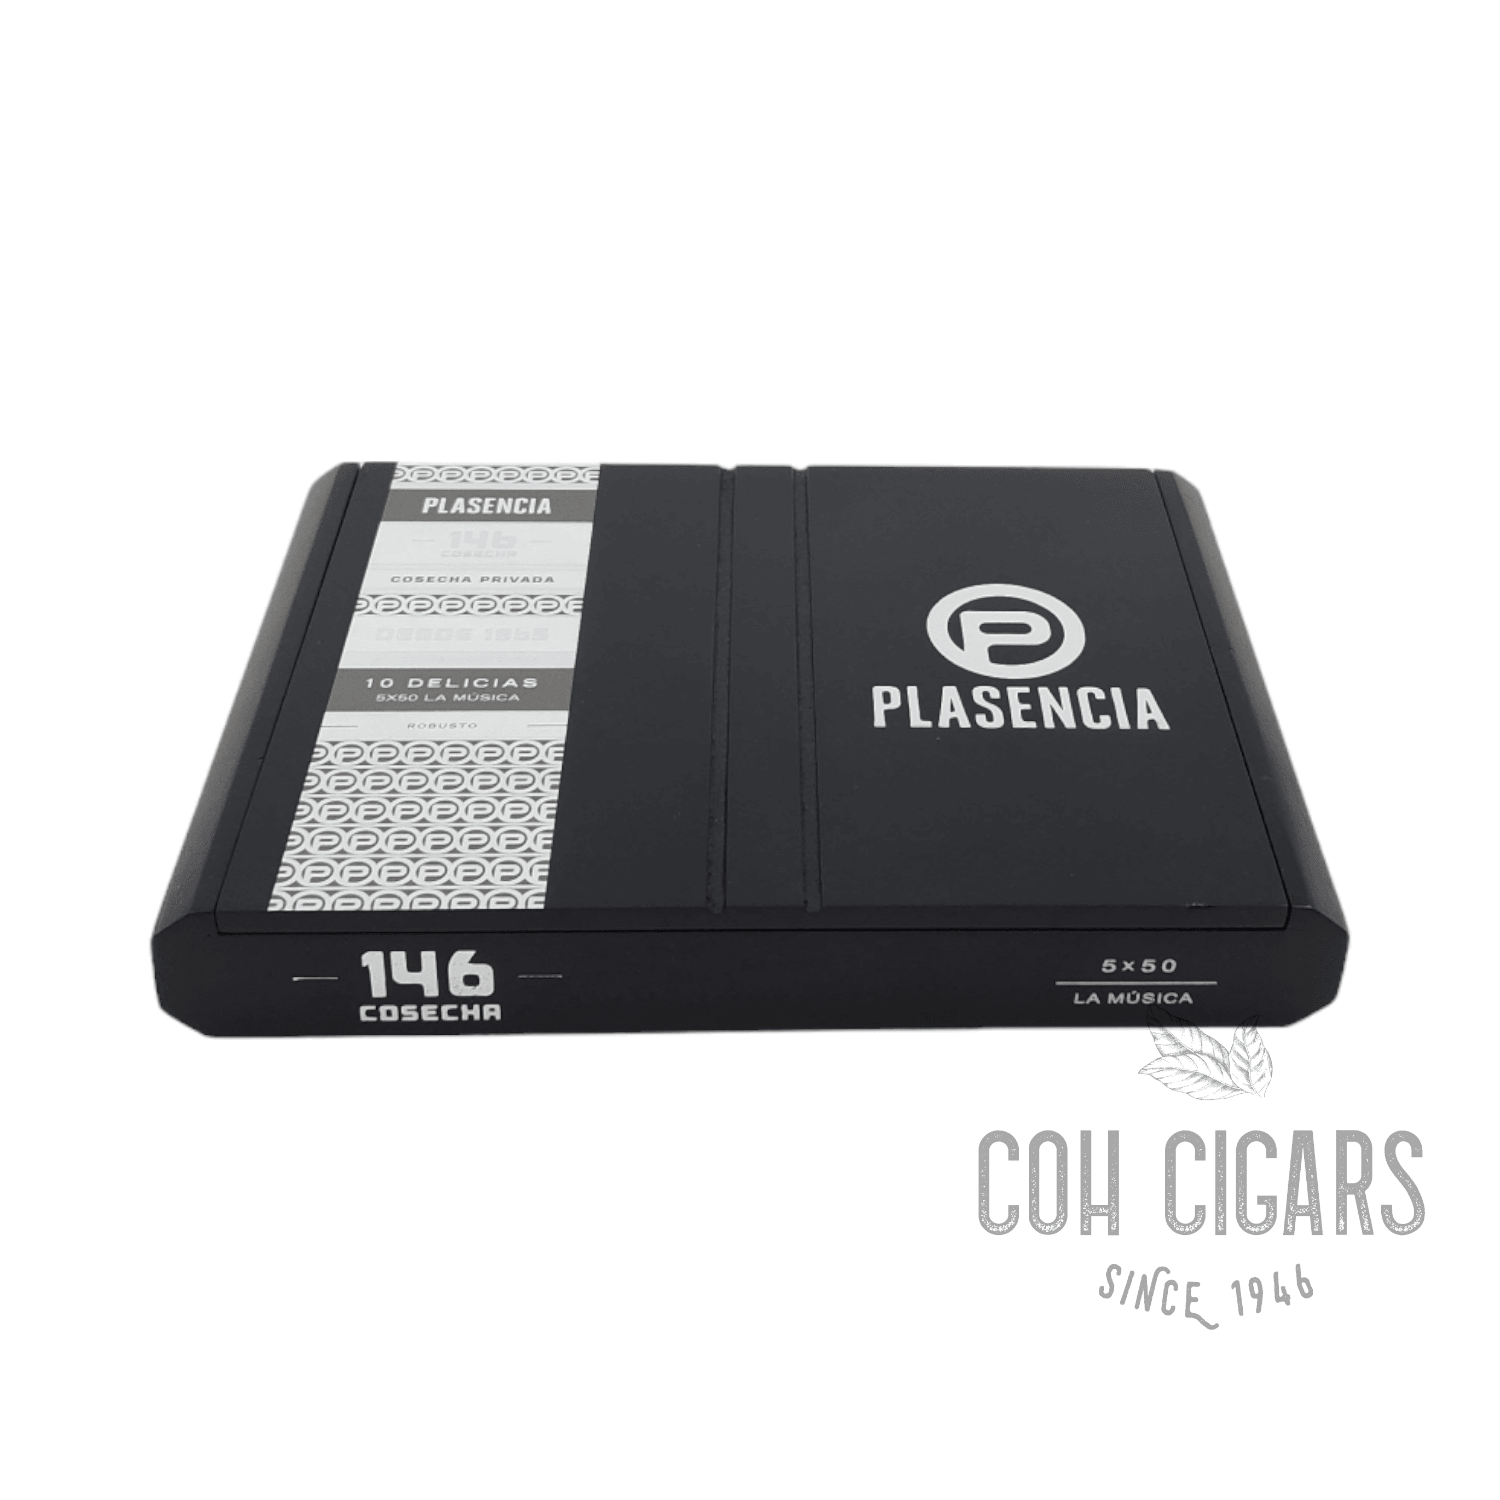 Plasencia Cosecha 146 La Musica Box 10 - hk.cohcigars